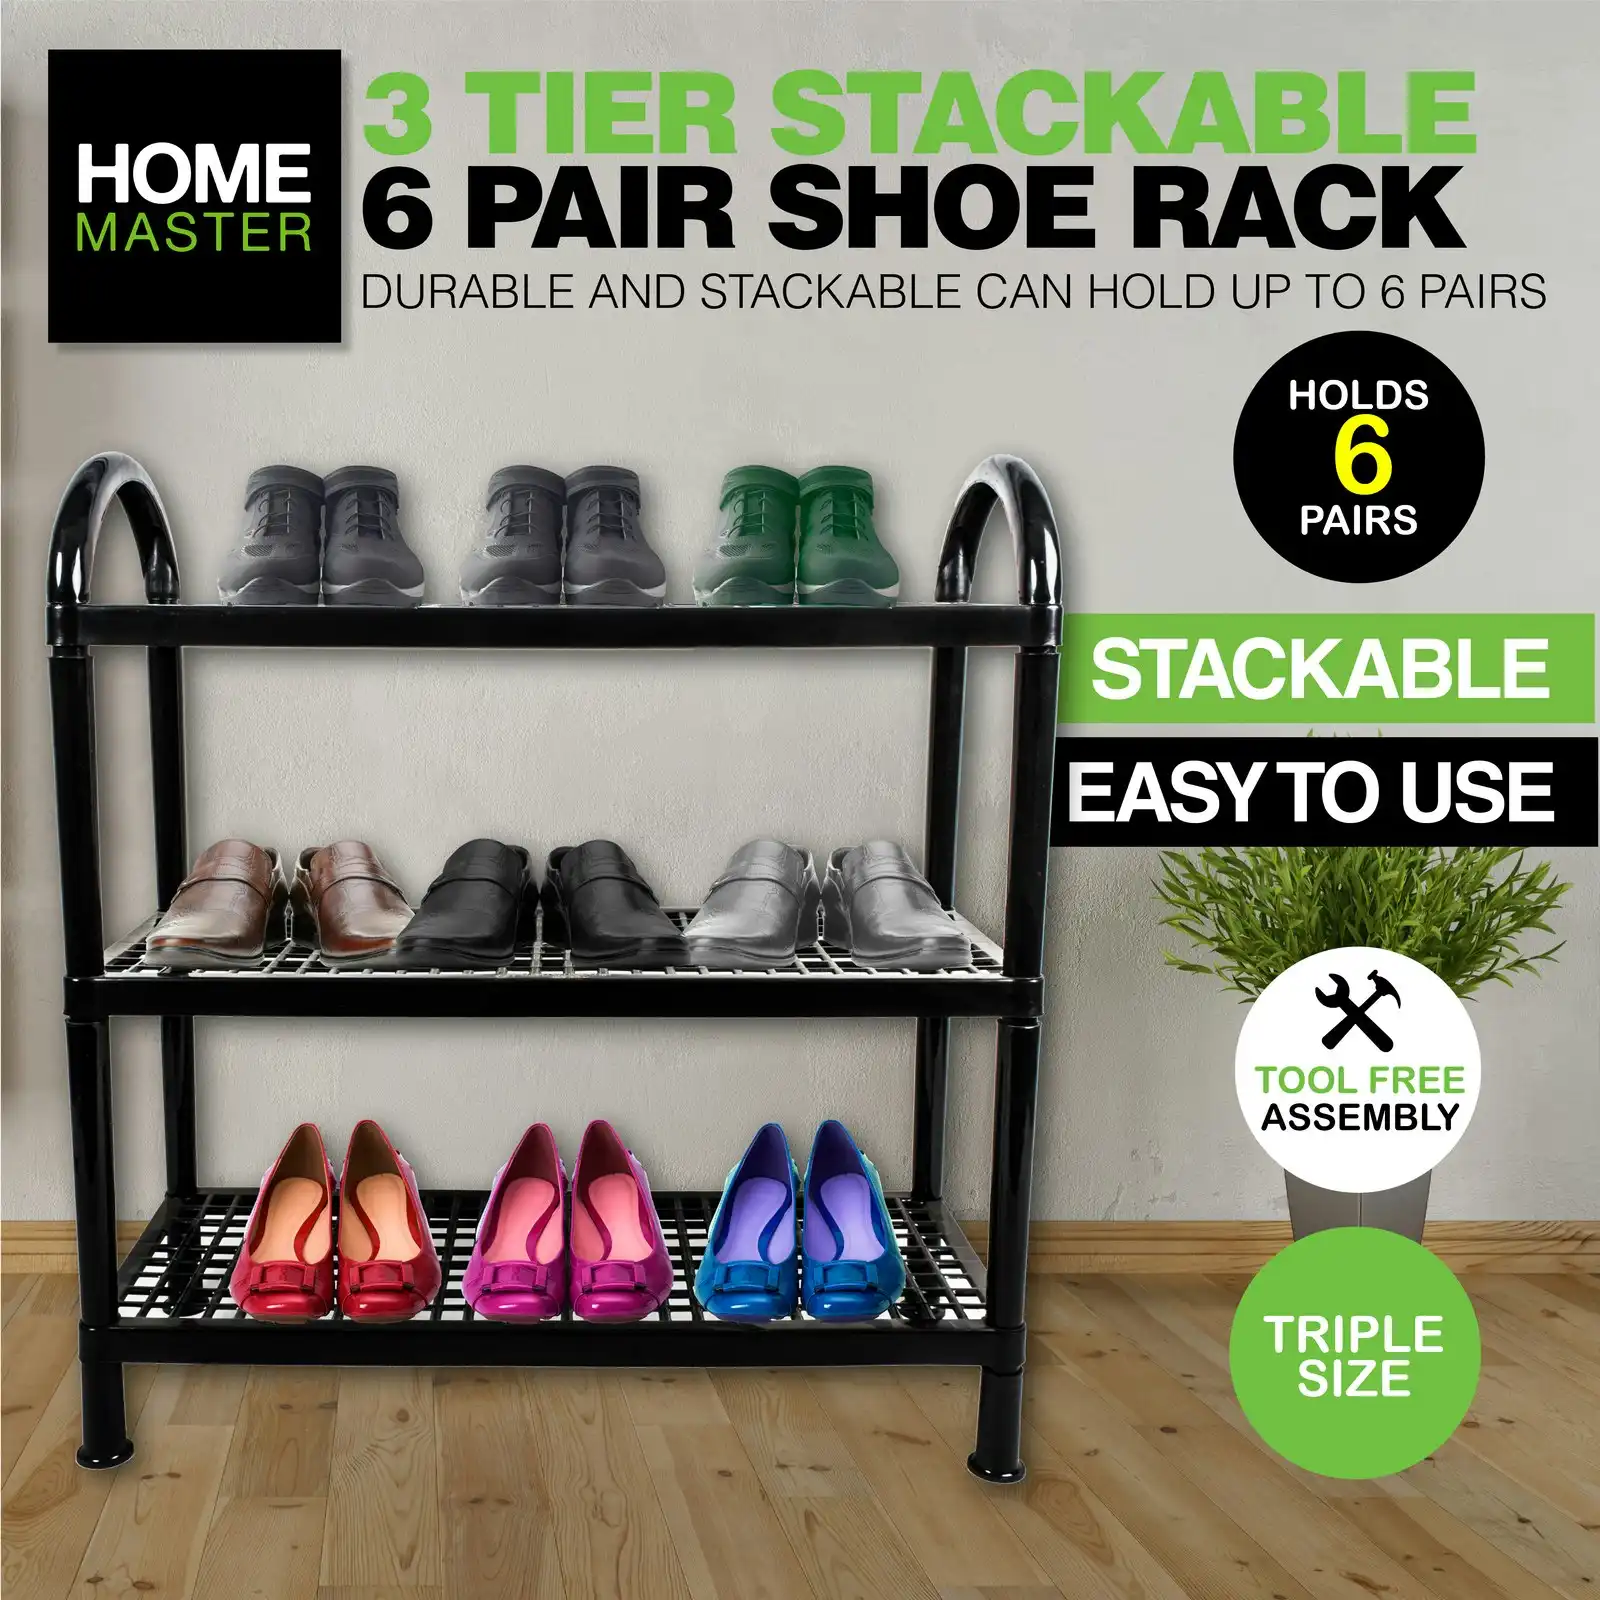 Home Master 3 Tier Shoe Rack Stackable Portable Non-Slip Rubber Feet Compact